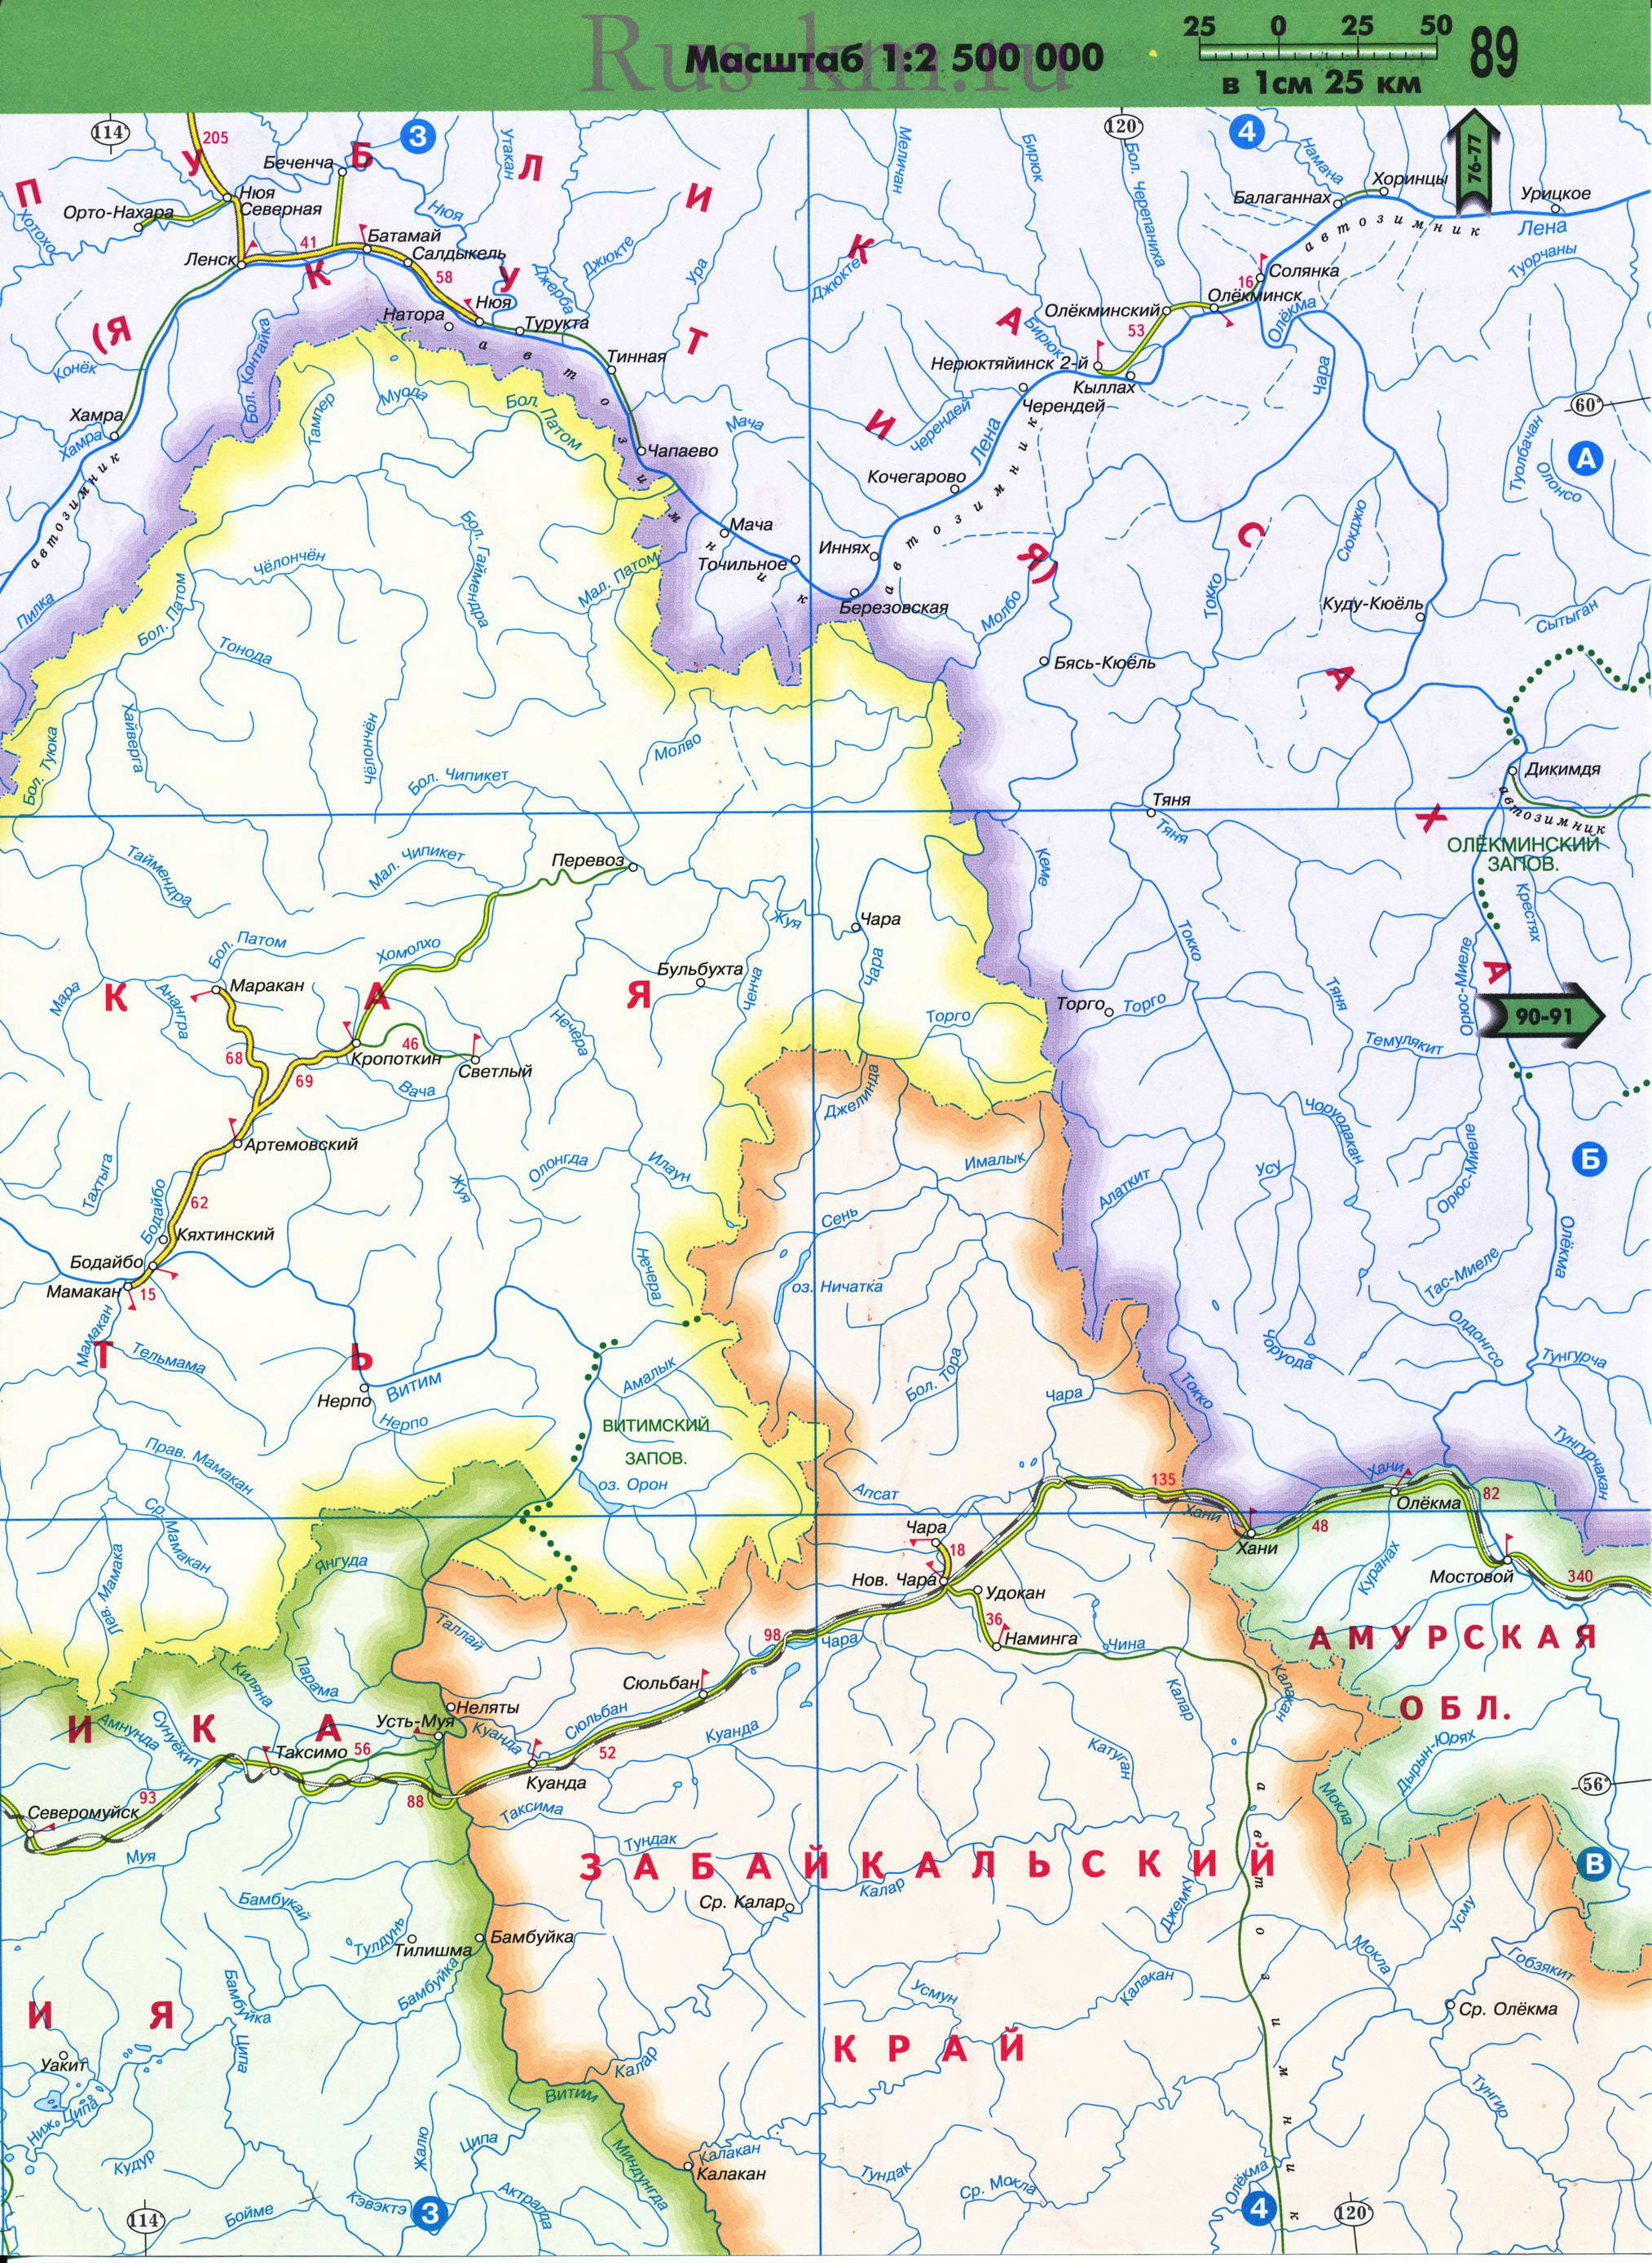 Карта Восточной Сибири автомобильная. Подробная карта автомобильных дорог Восточной Сибири из атласа России 2011 года, B1 - 